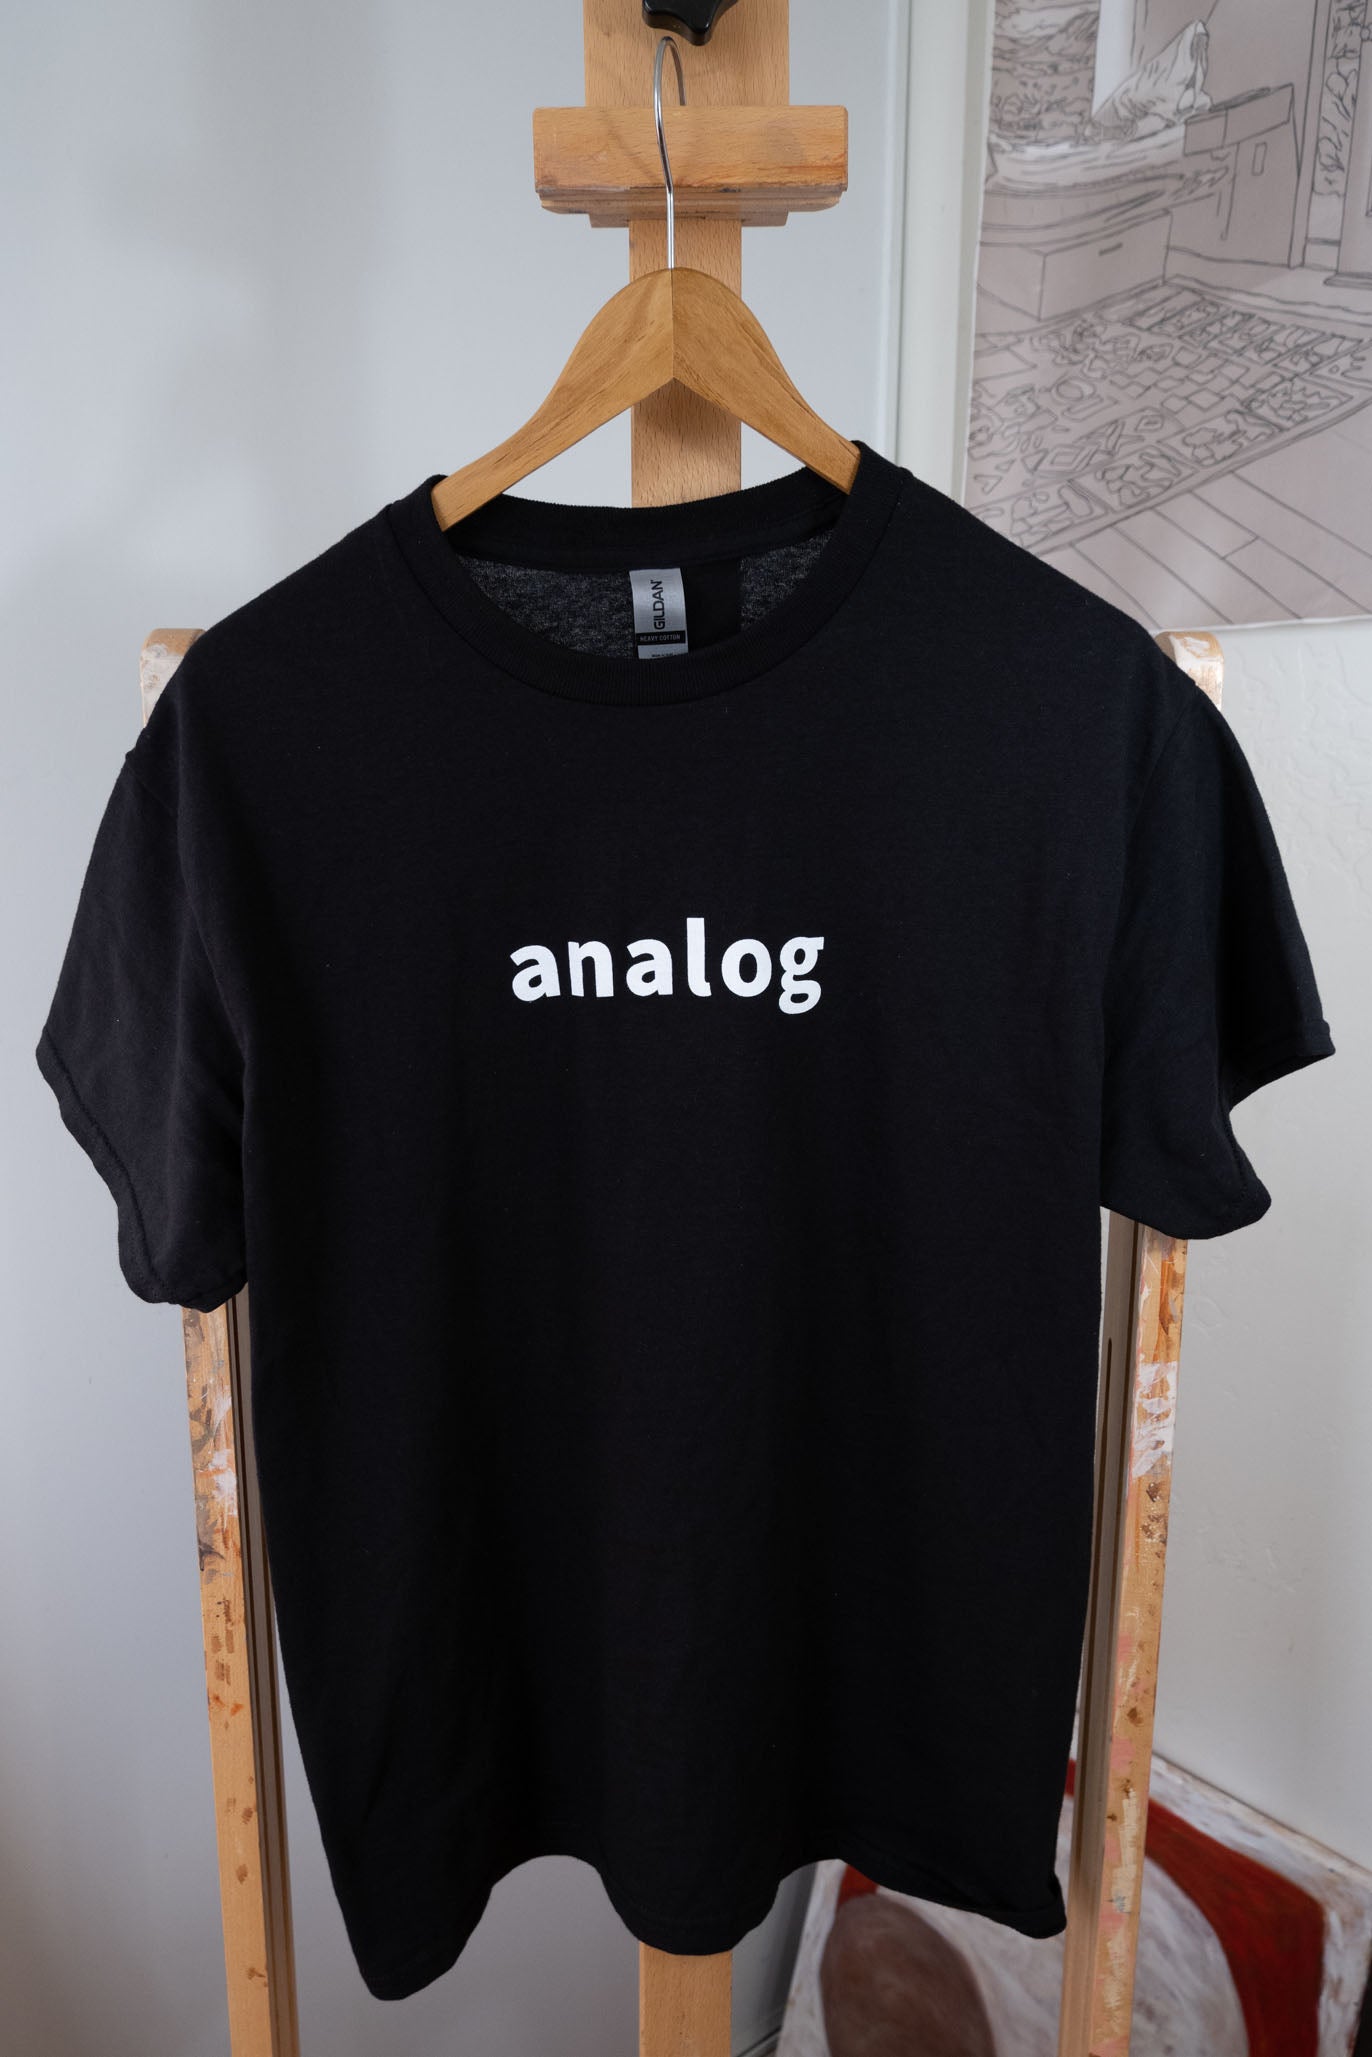 A black shirt on an Analog T-Shirt pencil.